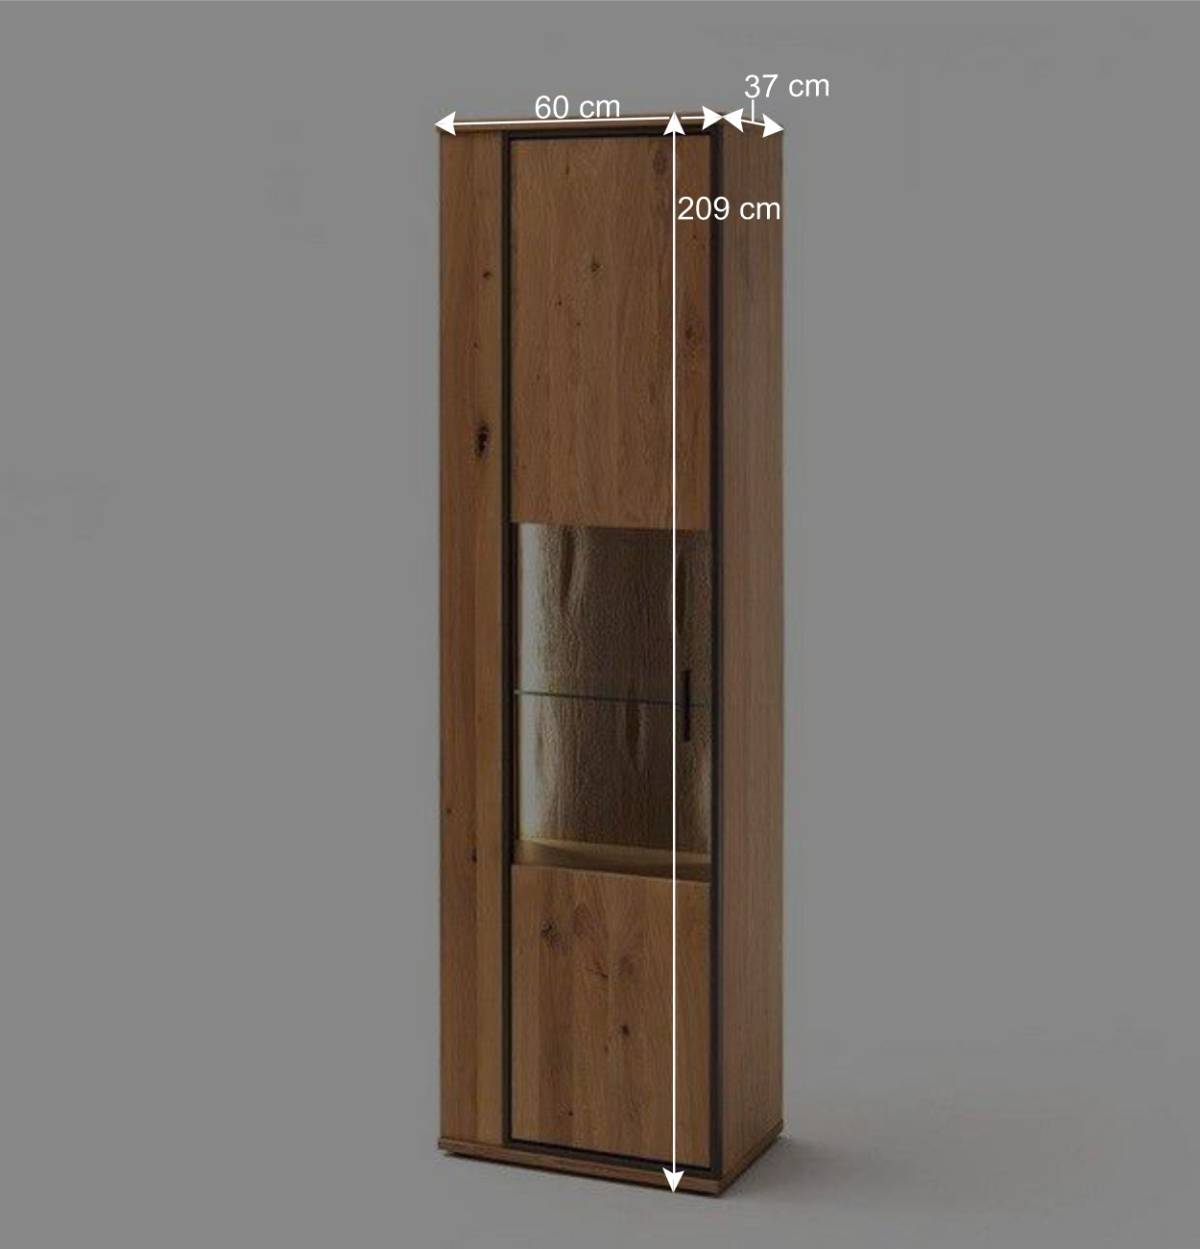 Wohnzimmer-Schrank mit Glas Einsatz - Vedreda